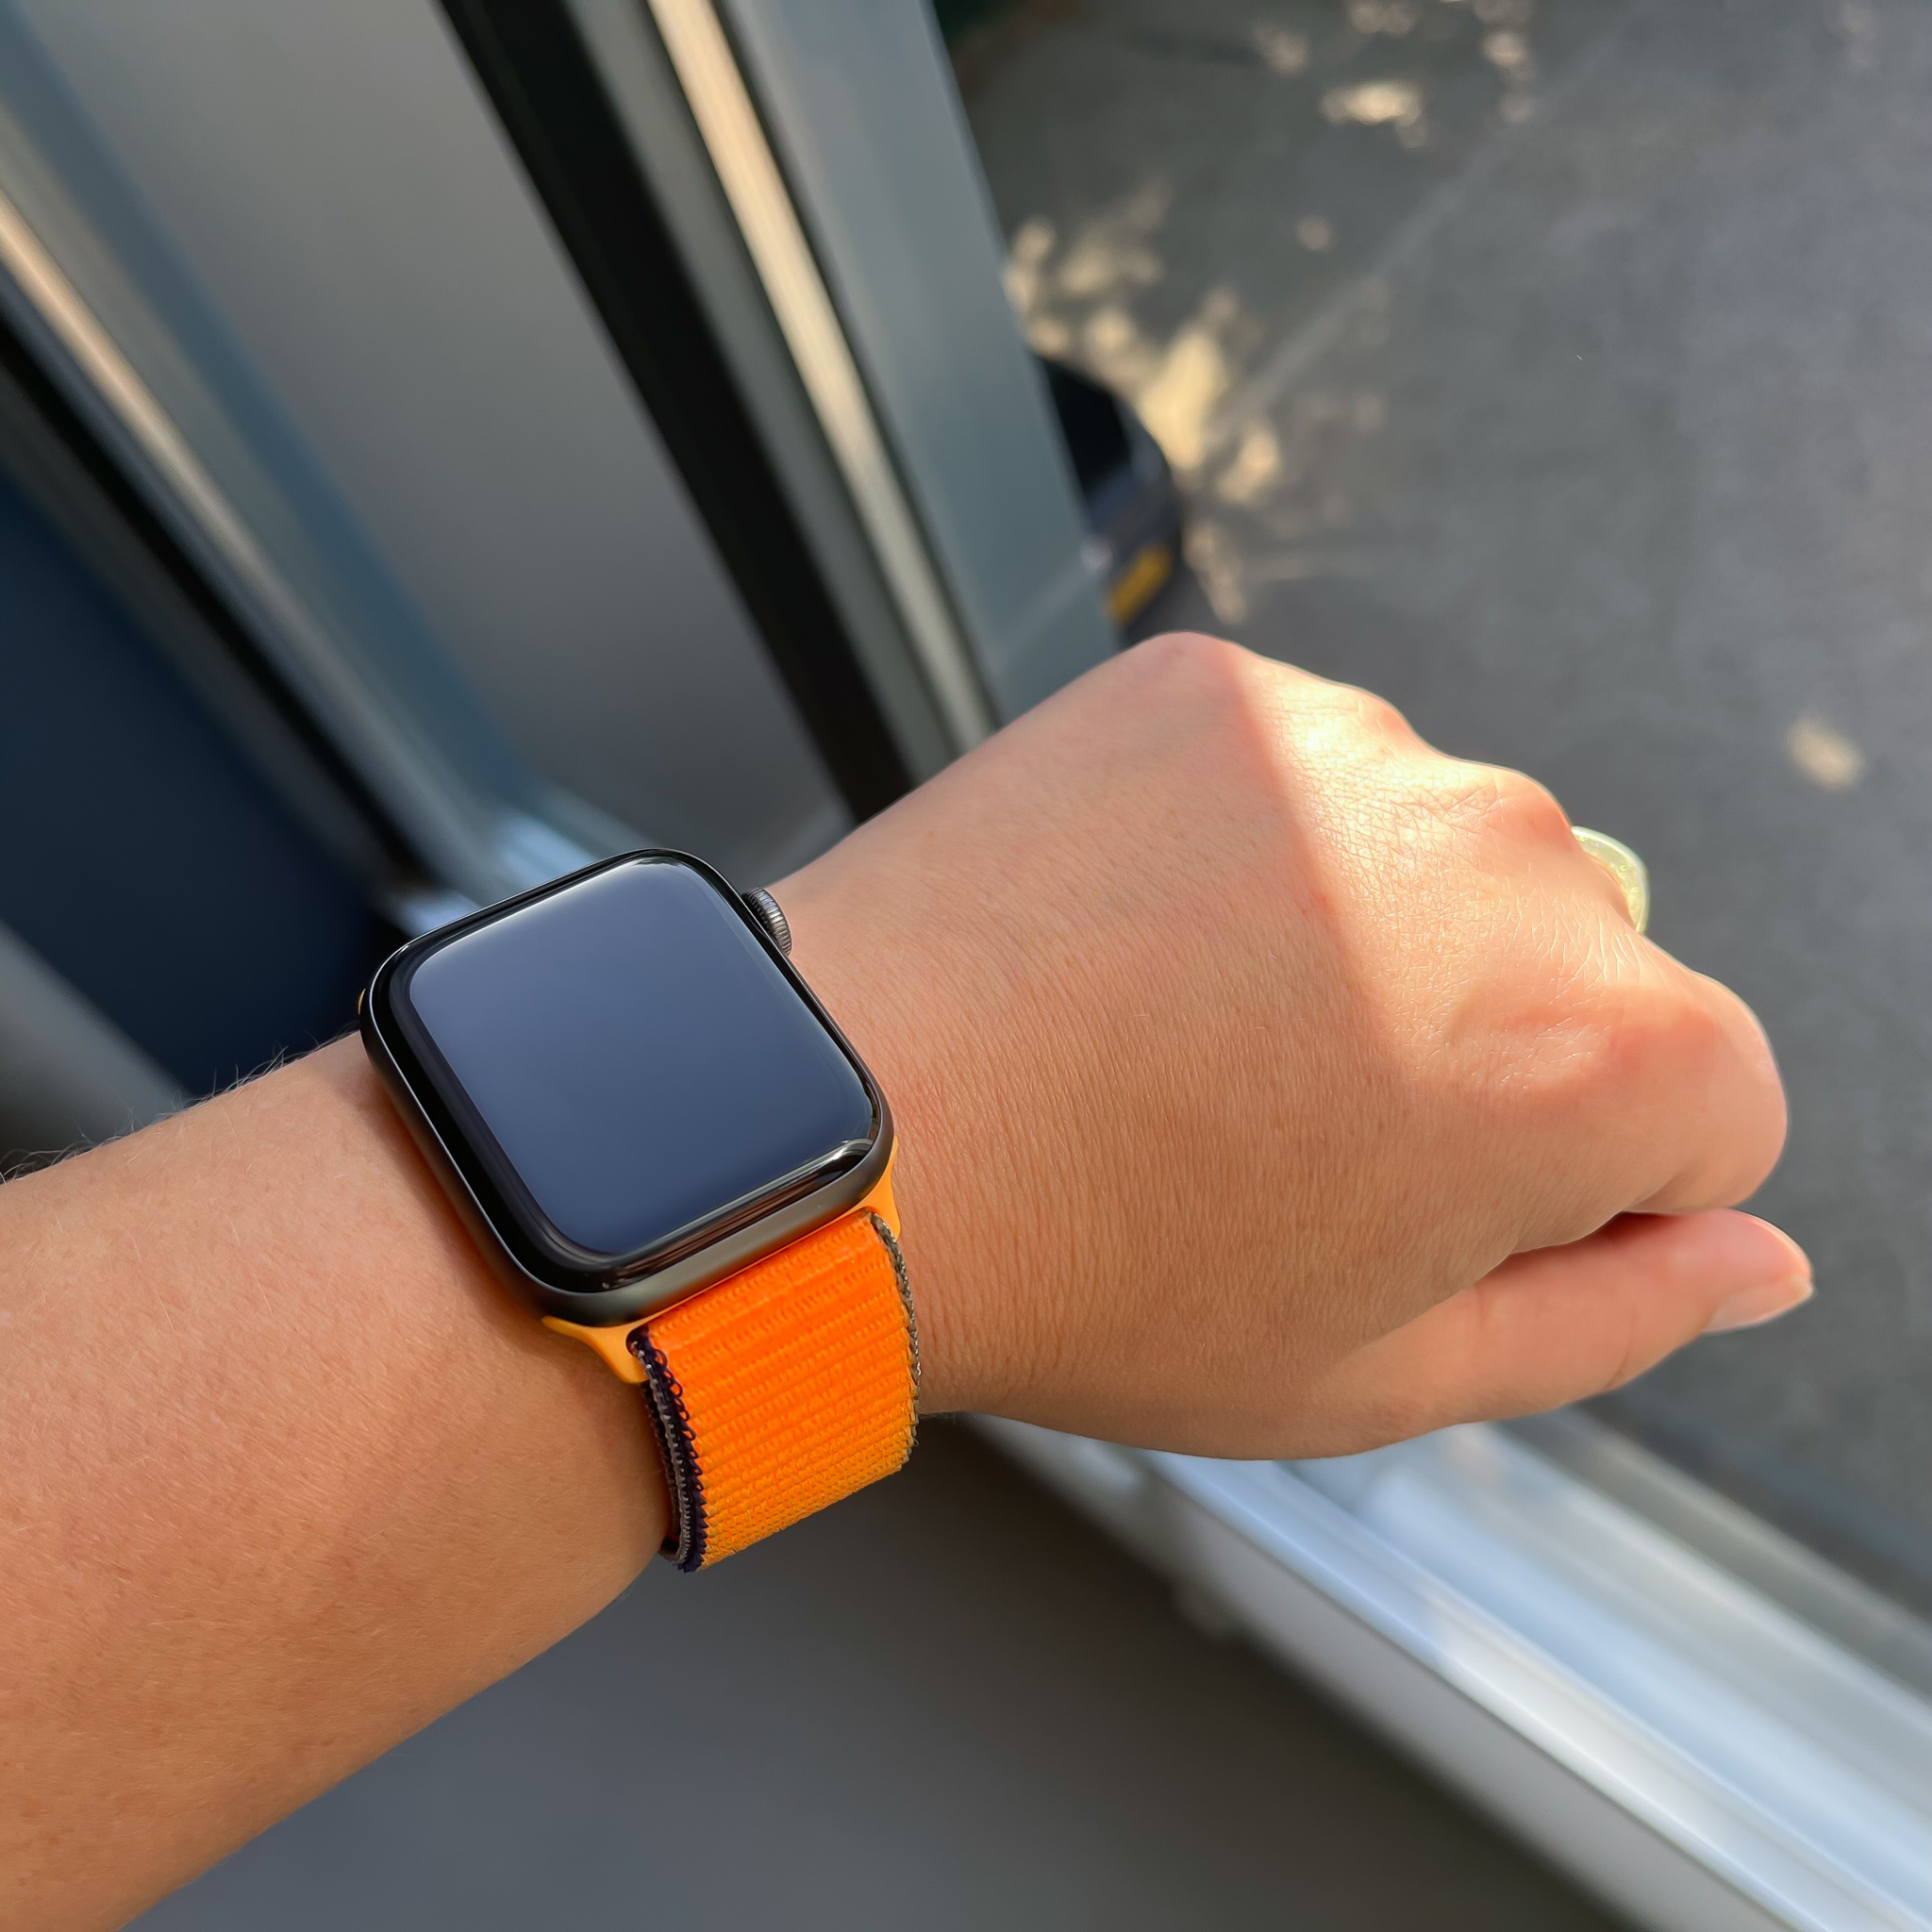 Apple Watch nylon geweven sport band  - kumquat